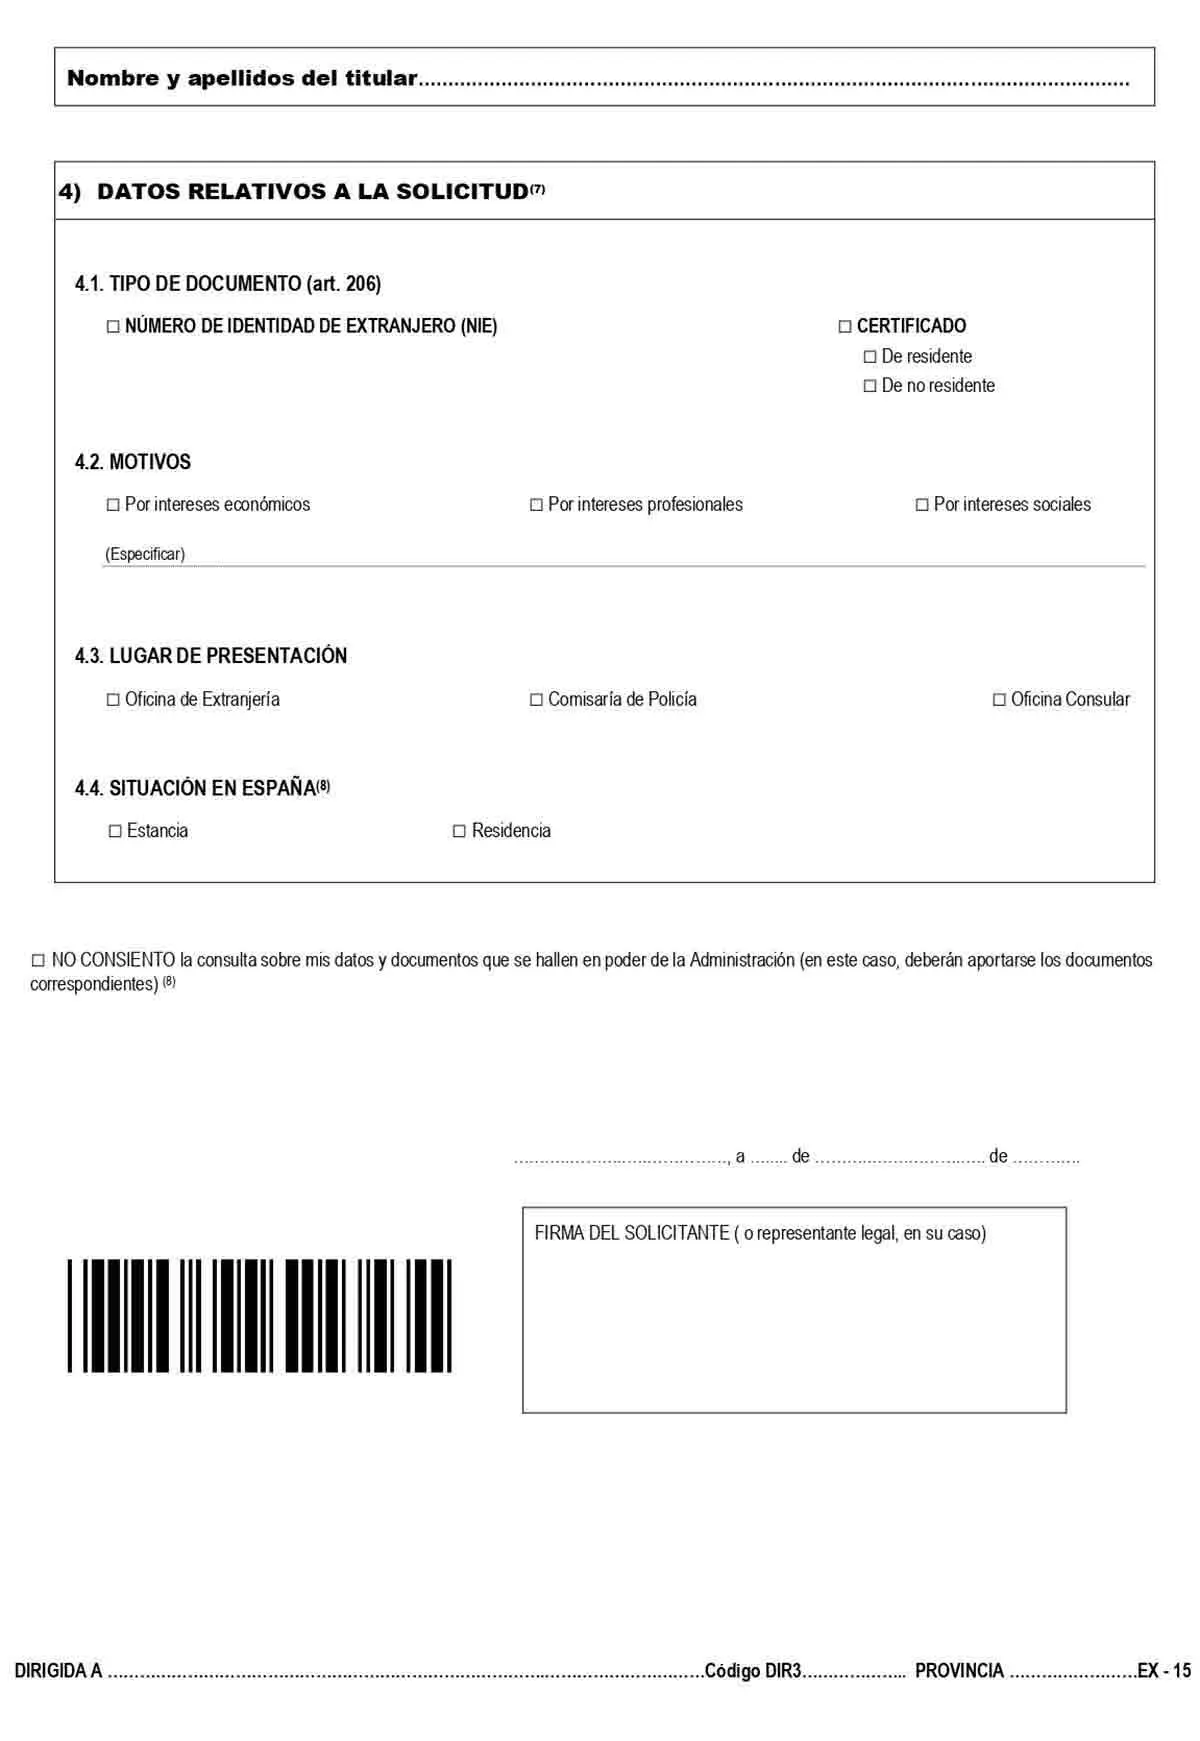 fotocopia de la hoja de filiación para nie - Qué documentos presentar para el NIE